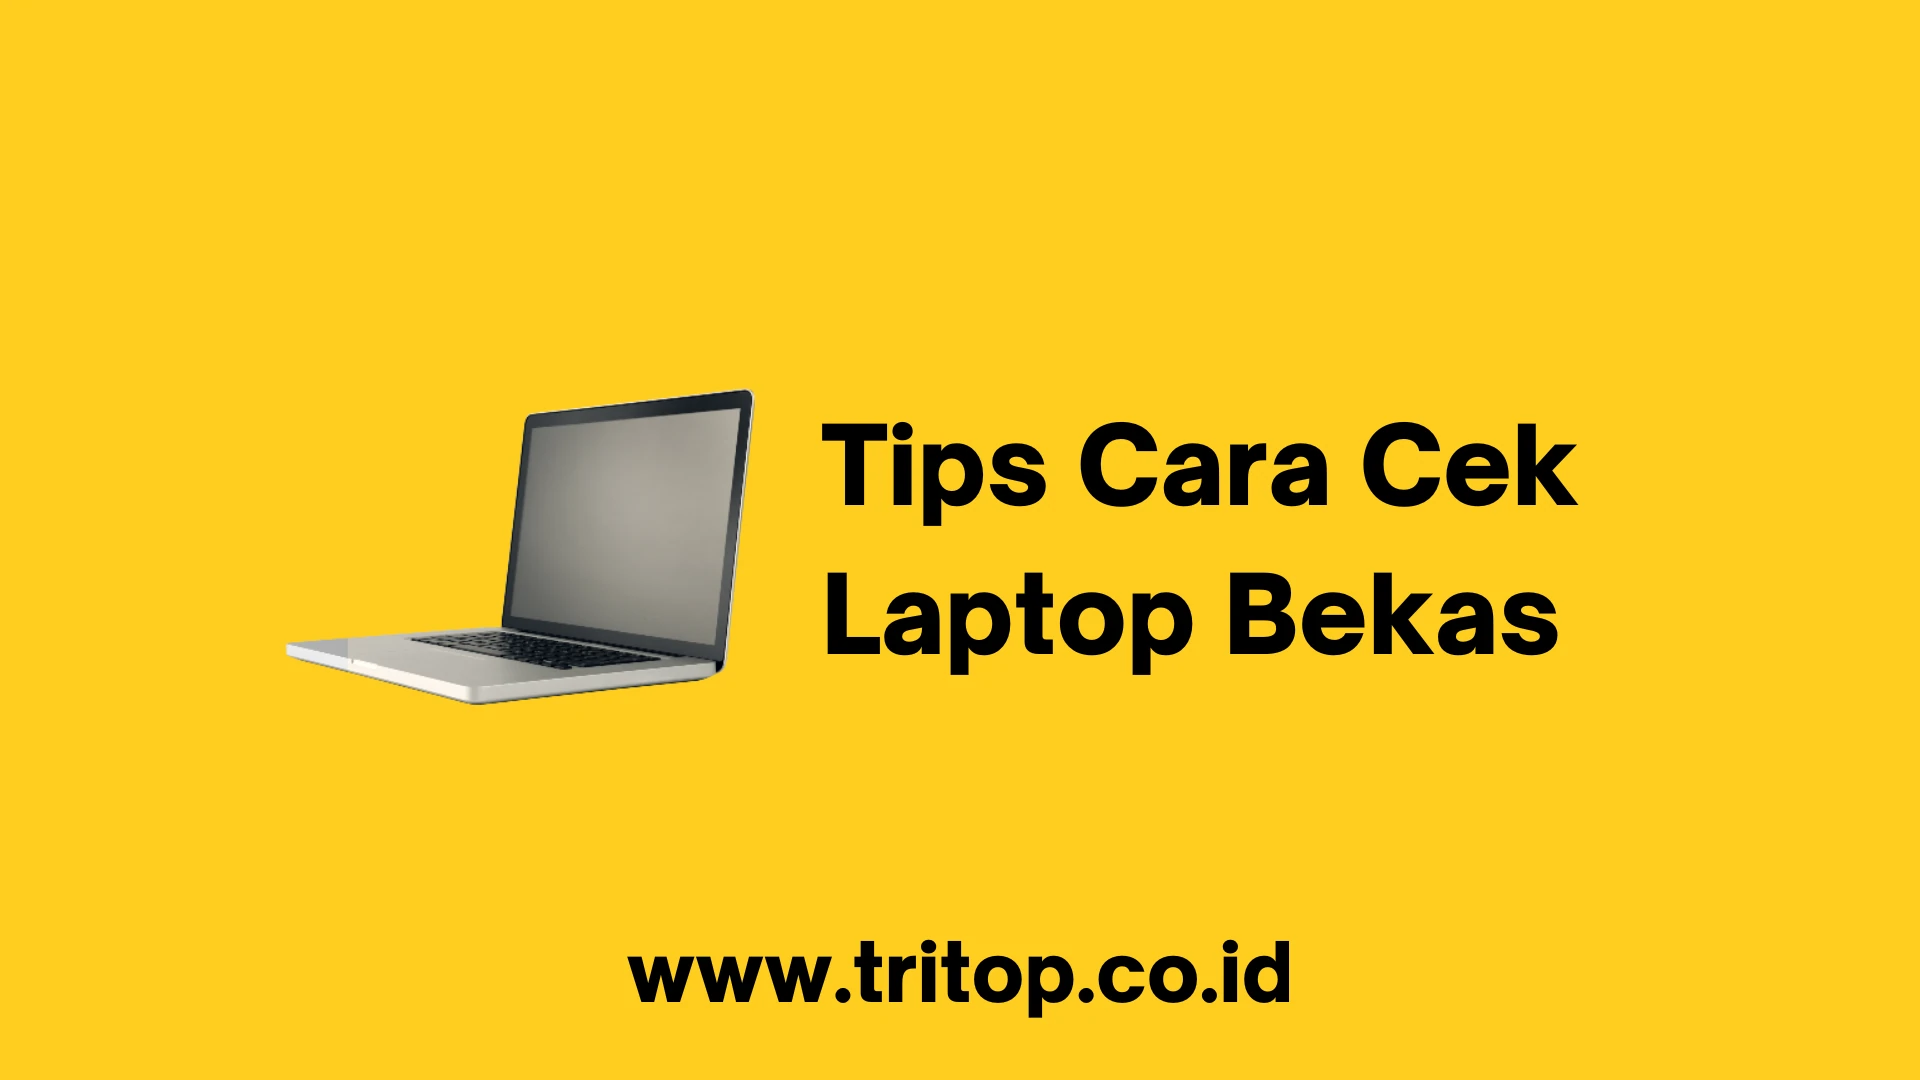 Tips Cara Cek Laptop Bekas